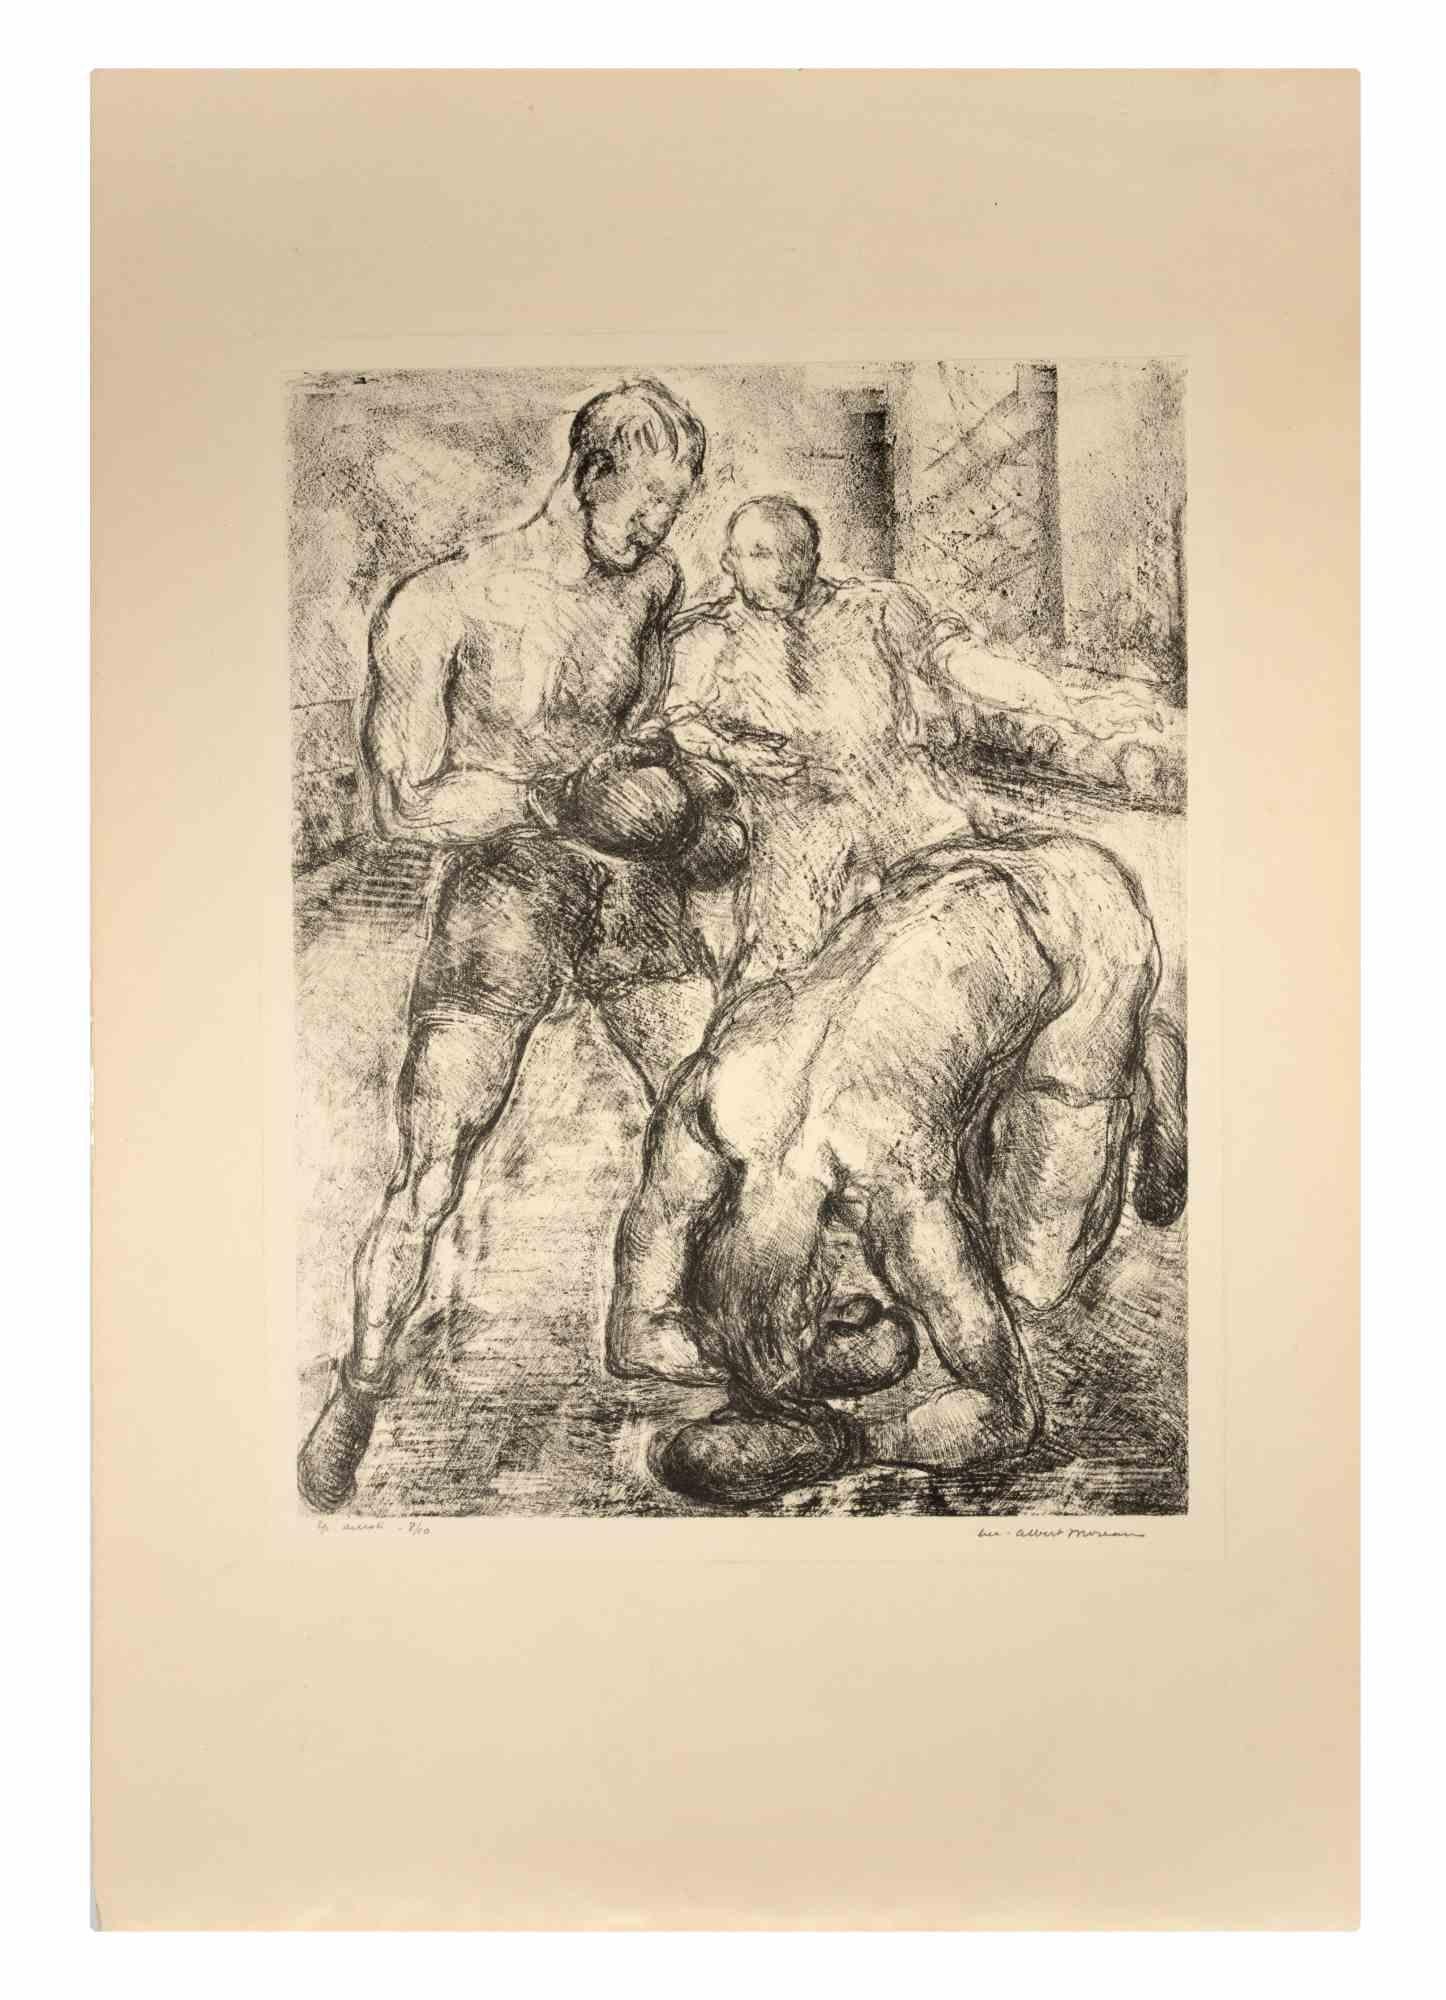 Boxeurs ist eine Lithographie auf elfenbeinfarbenem Papier von Luc Albert Moreau.

Das Kunstwerk ist in gutem Zustand.

Handsigniert in der rechten unteren Ecke, nummeriert auf der linken Seite.

Luc-Albert Moreau (1882-1948) ist ein französischer